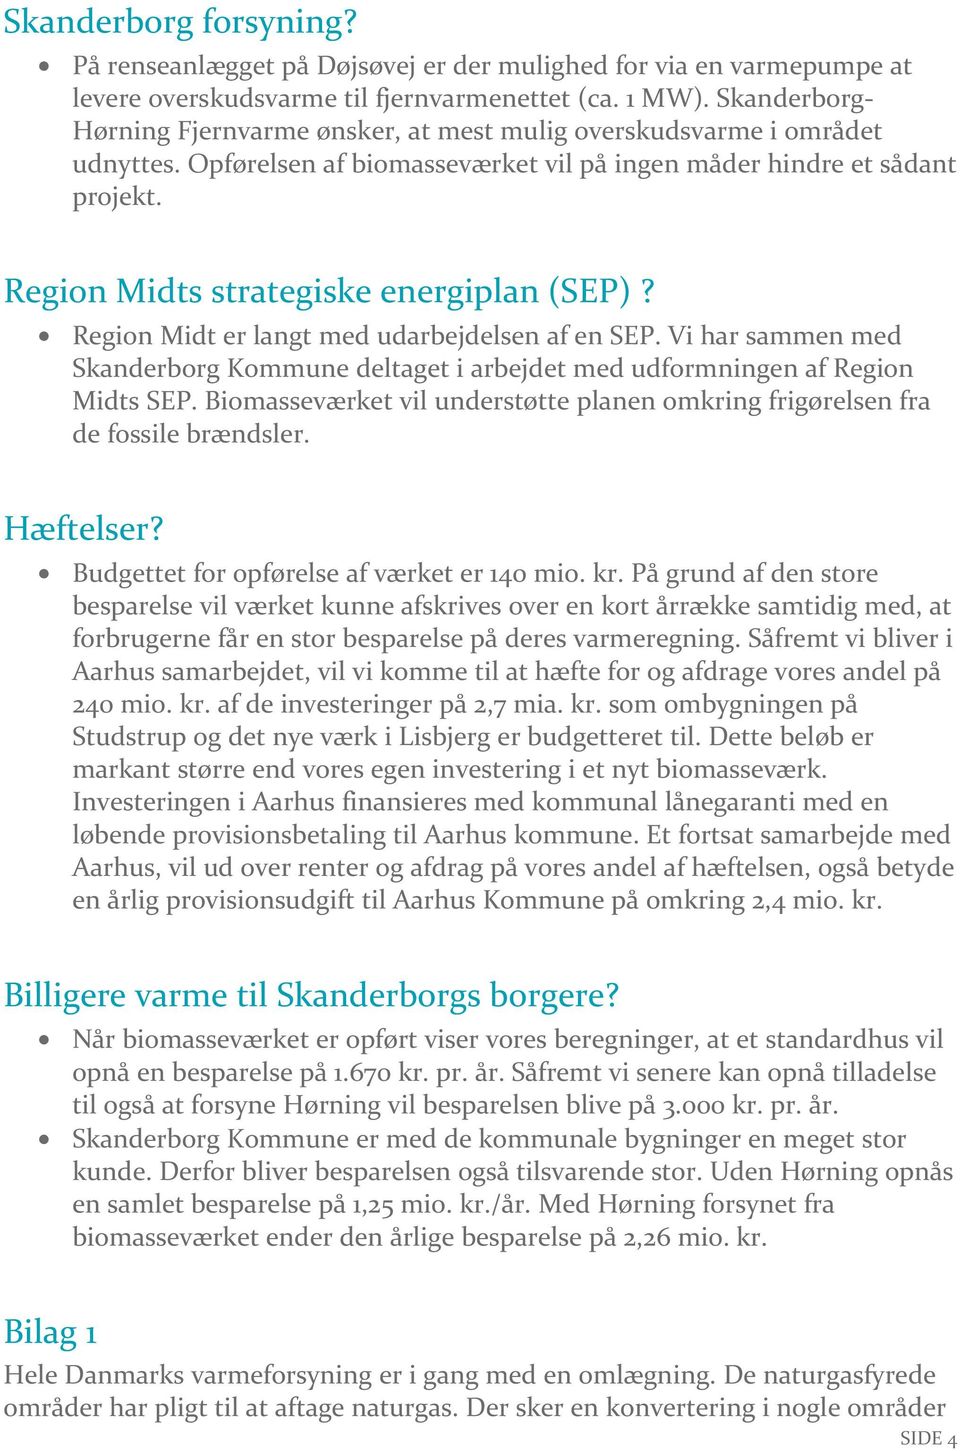 Region Midts strategiske energiplan (SEP)? Region Midt er langt med udarbejdelsen af en SEP. Vi har sammen med Skanderborg Kommune deltaget i arbejdet med udformningen af Region Midts SEP.